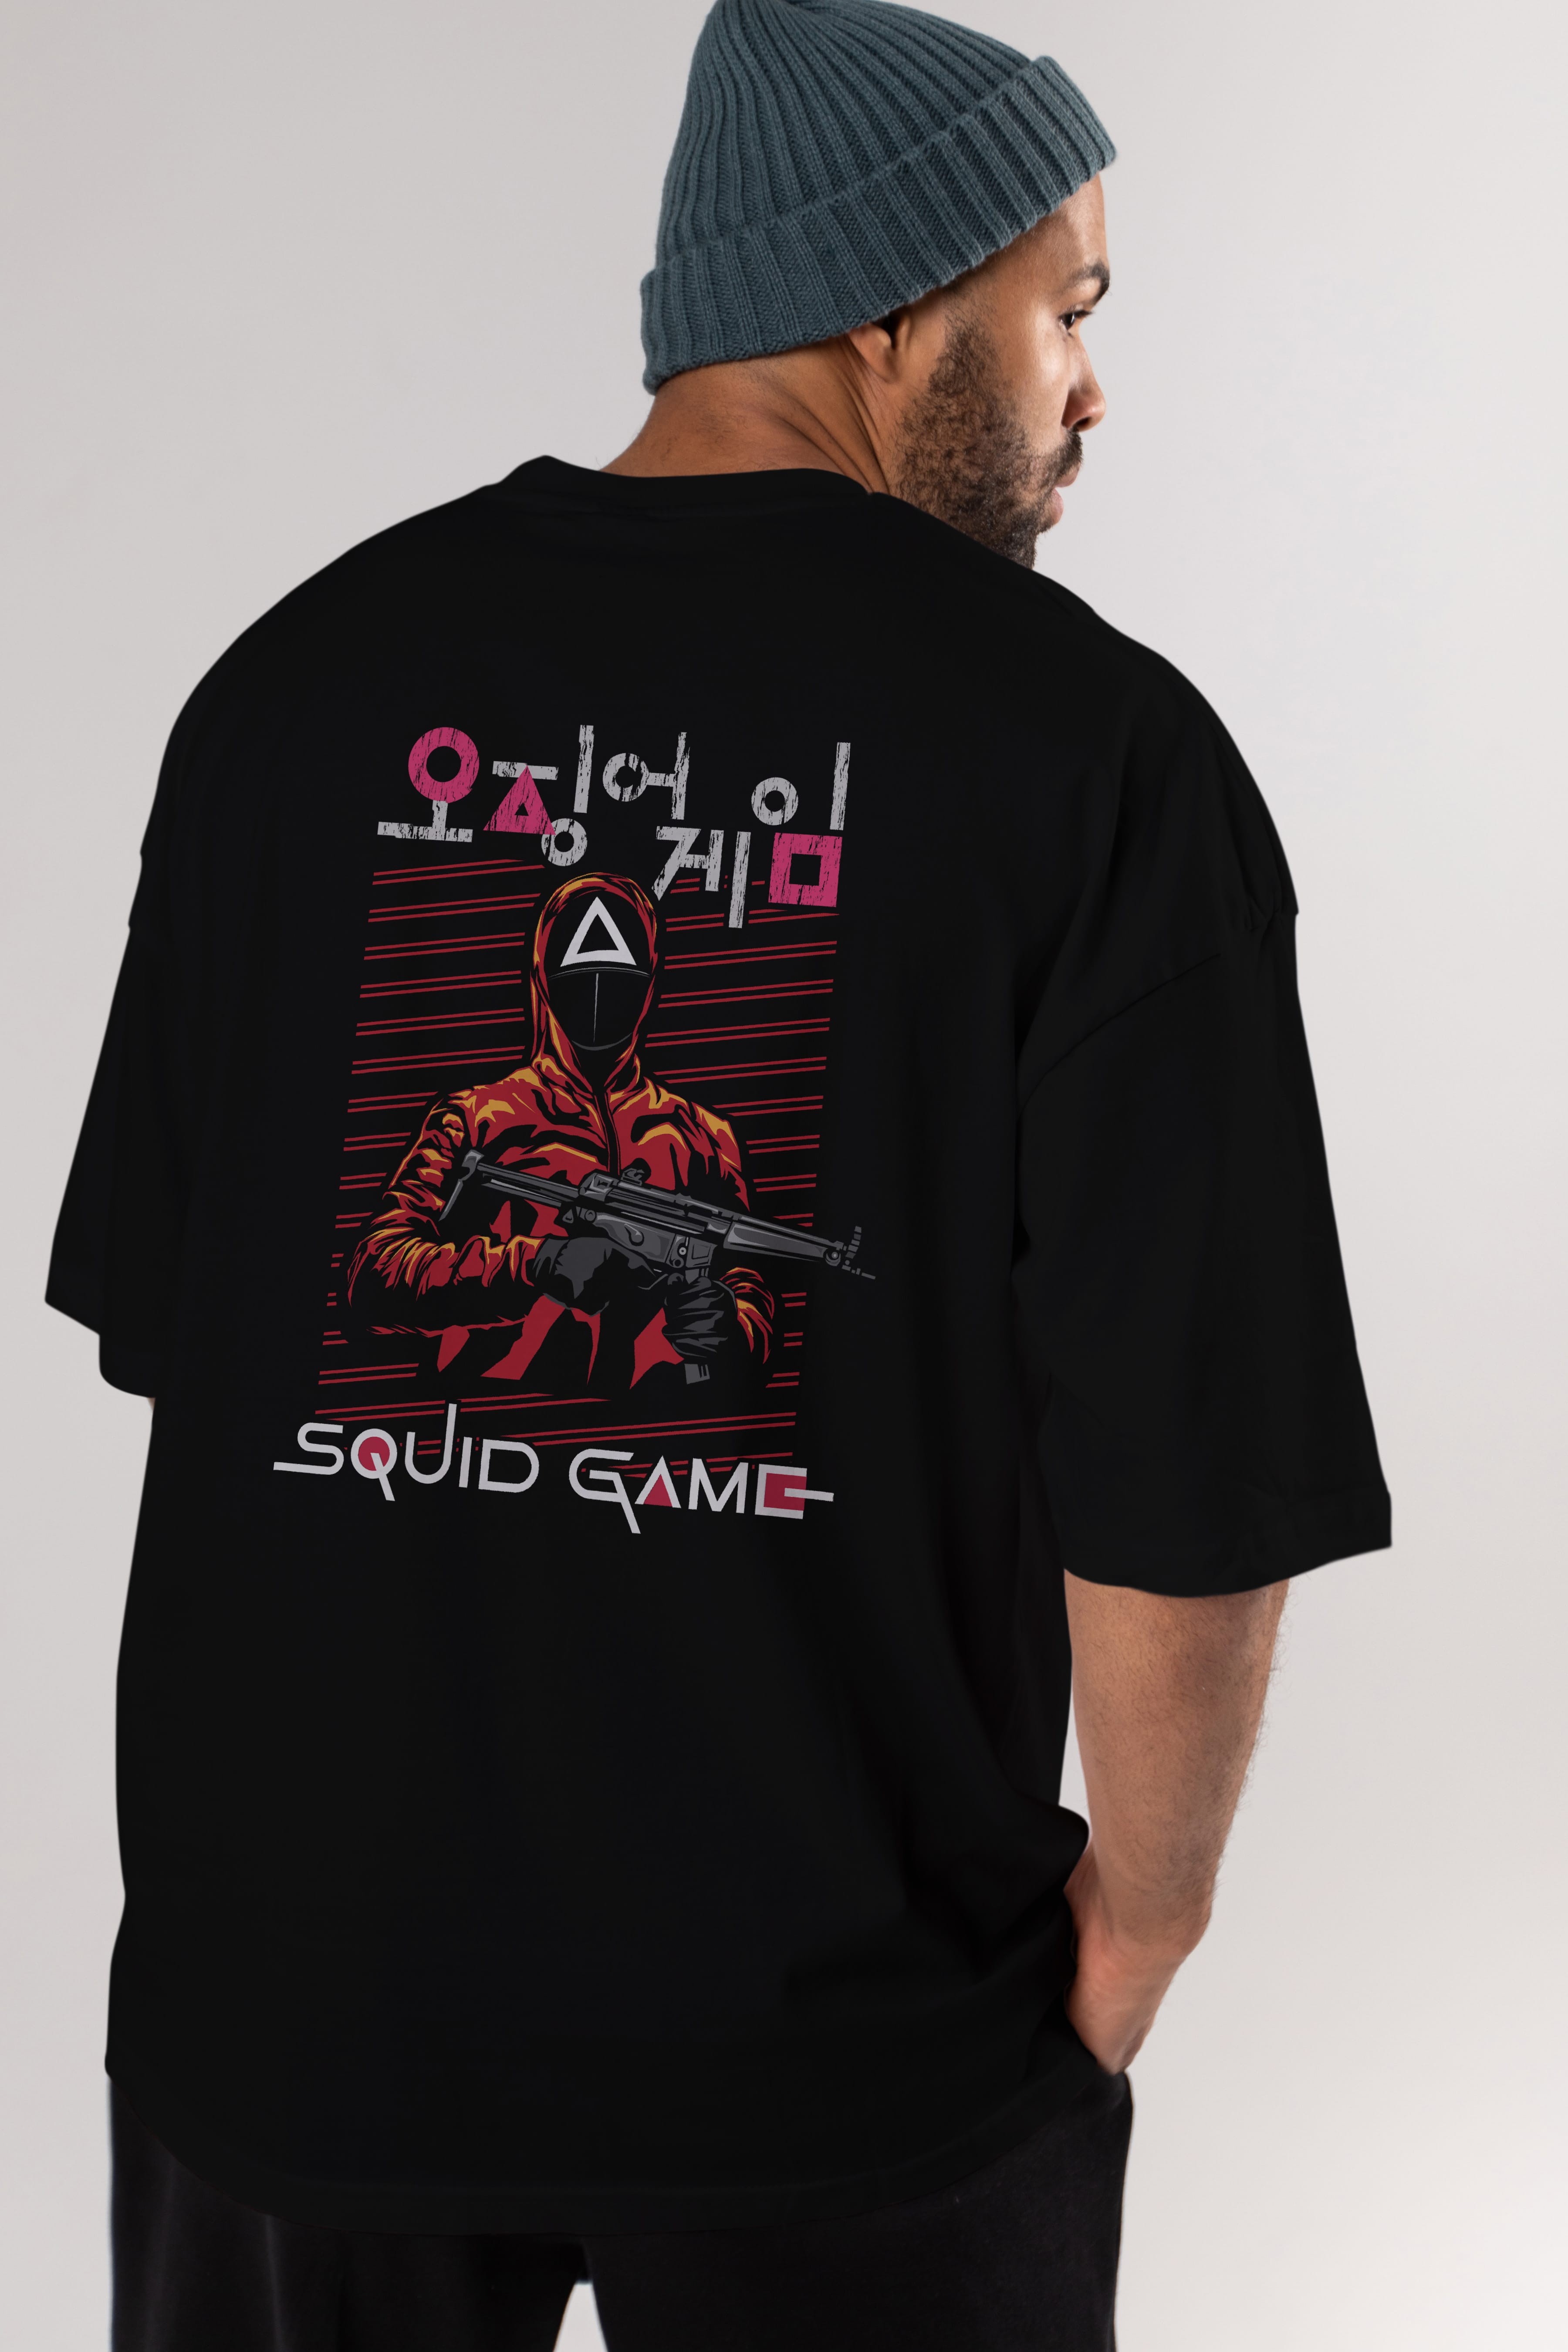 Squid Game (2) Arka Baskılı Oversize t-shirt Erkek Kadın Unisex %100 Pamuk Bisiklet Yaka tişort